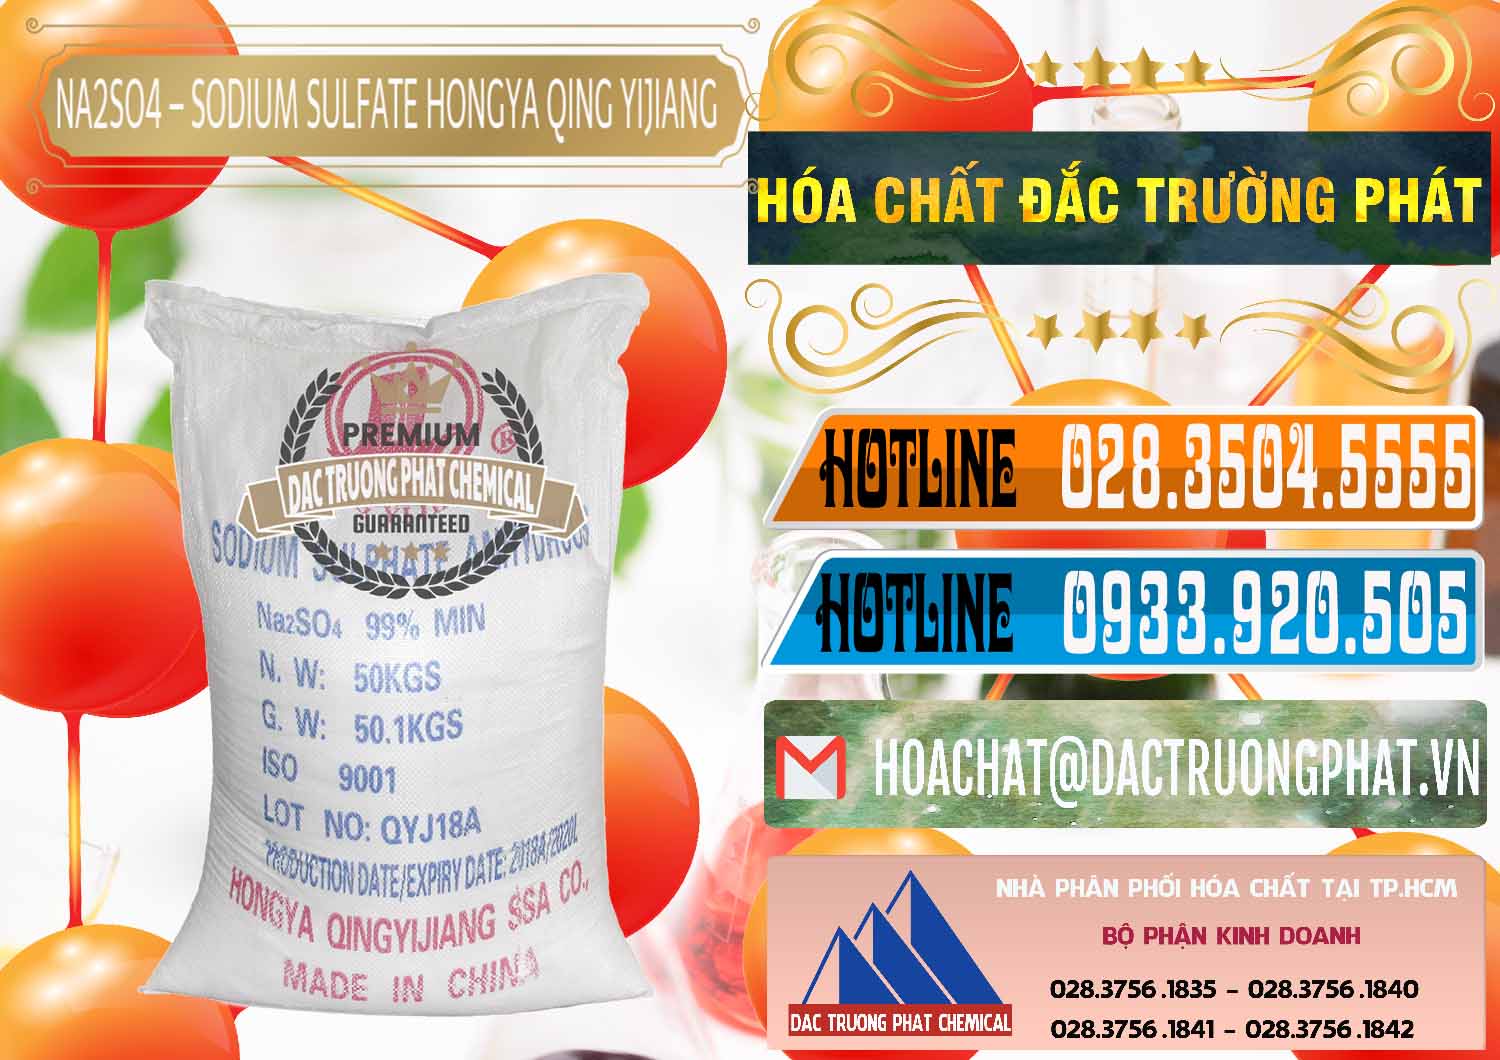 Chuyên bán ( cung ứng ) Sodium Sulphate - Muối Sunfat Na2SO4 Logo Cánh Bườm Hongya Qing Yi Trung Quốc China - 0098 - Cty cung cấp và kinh doanh hóa chất tại TP.HCM - stmp.net